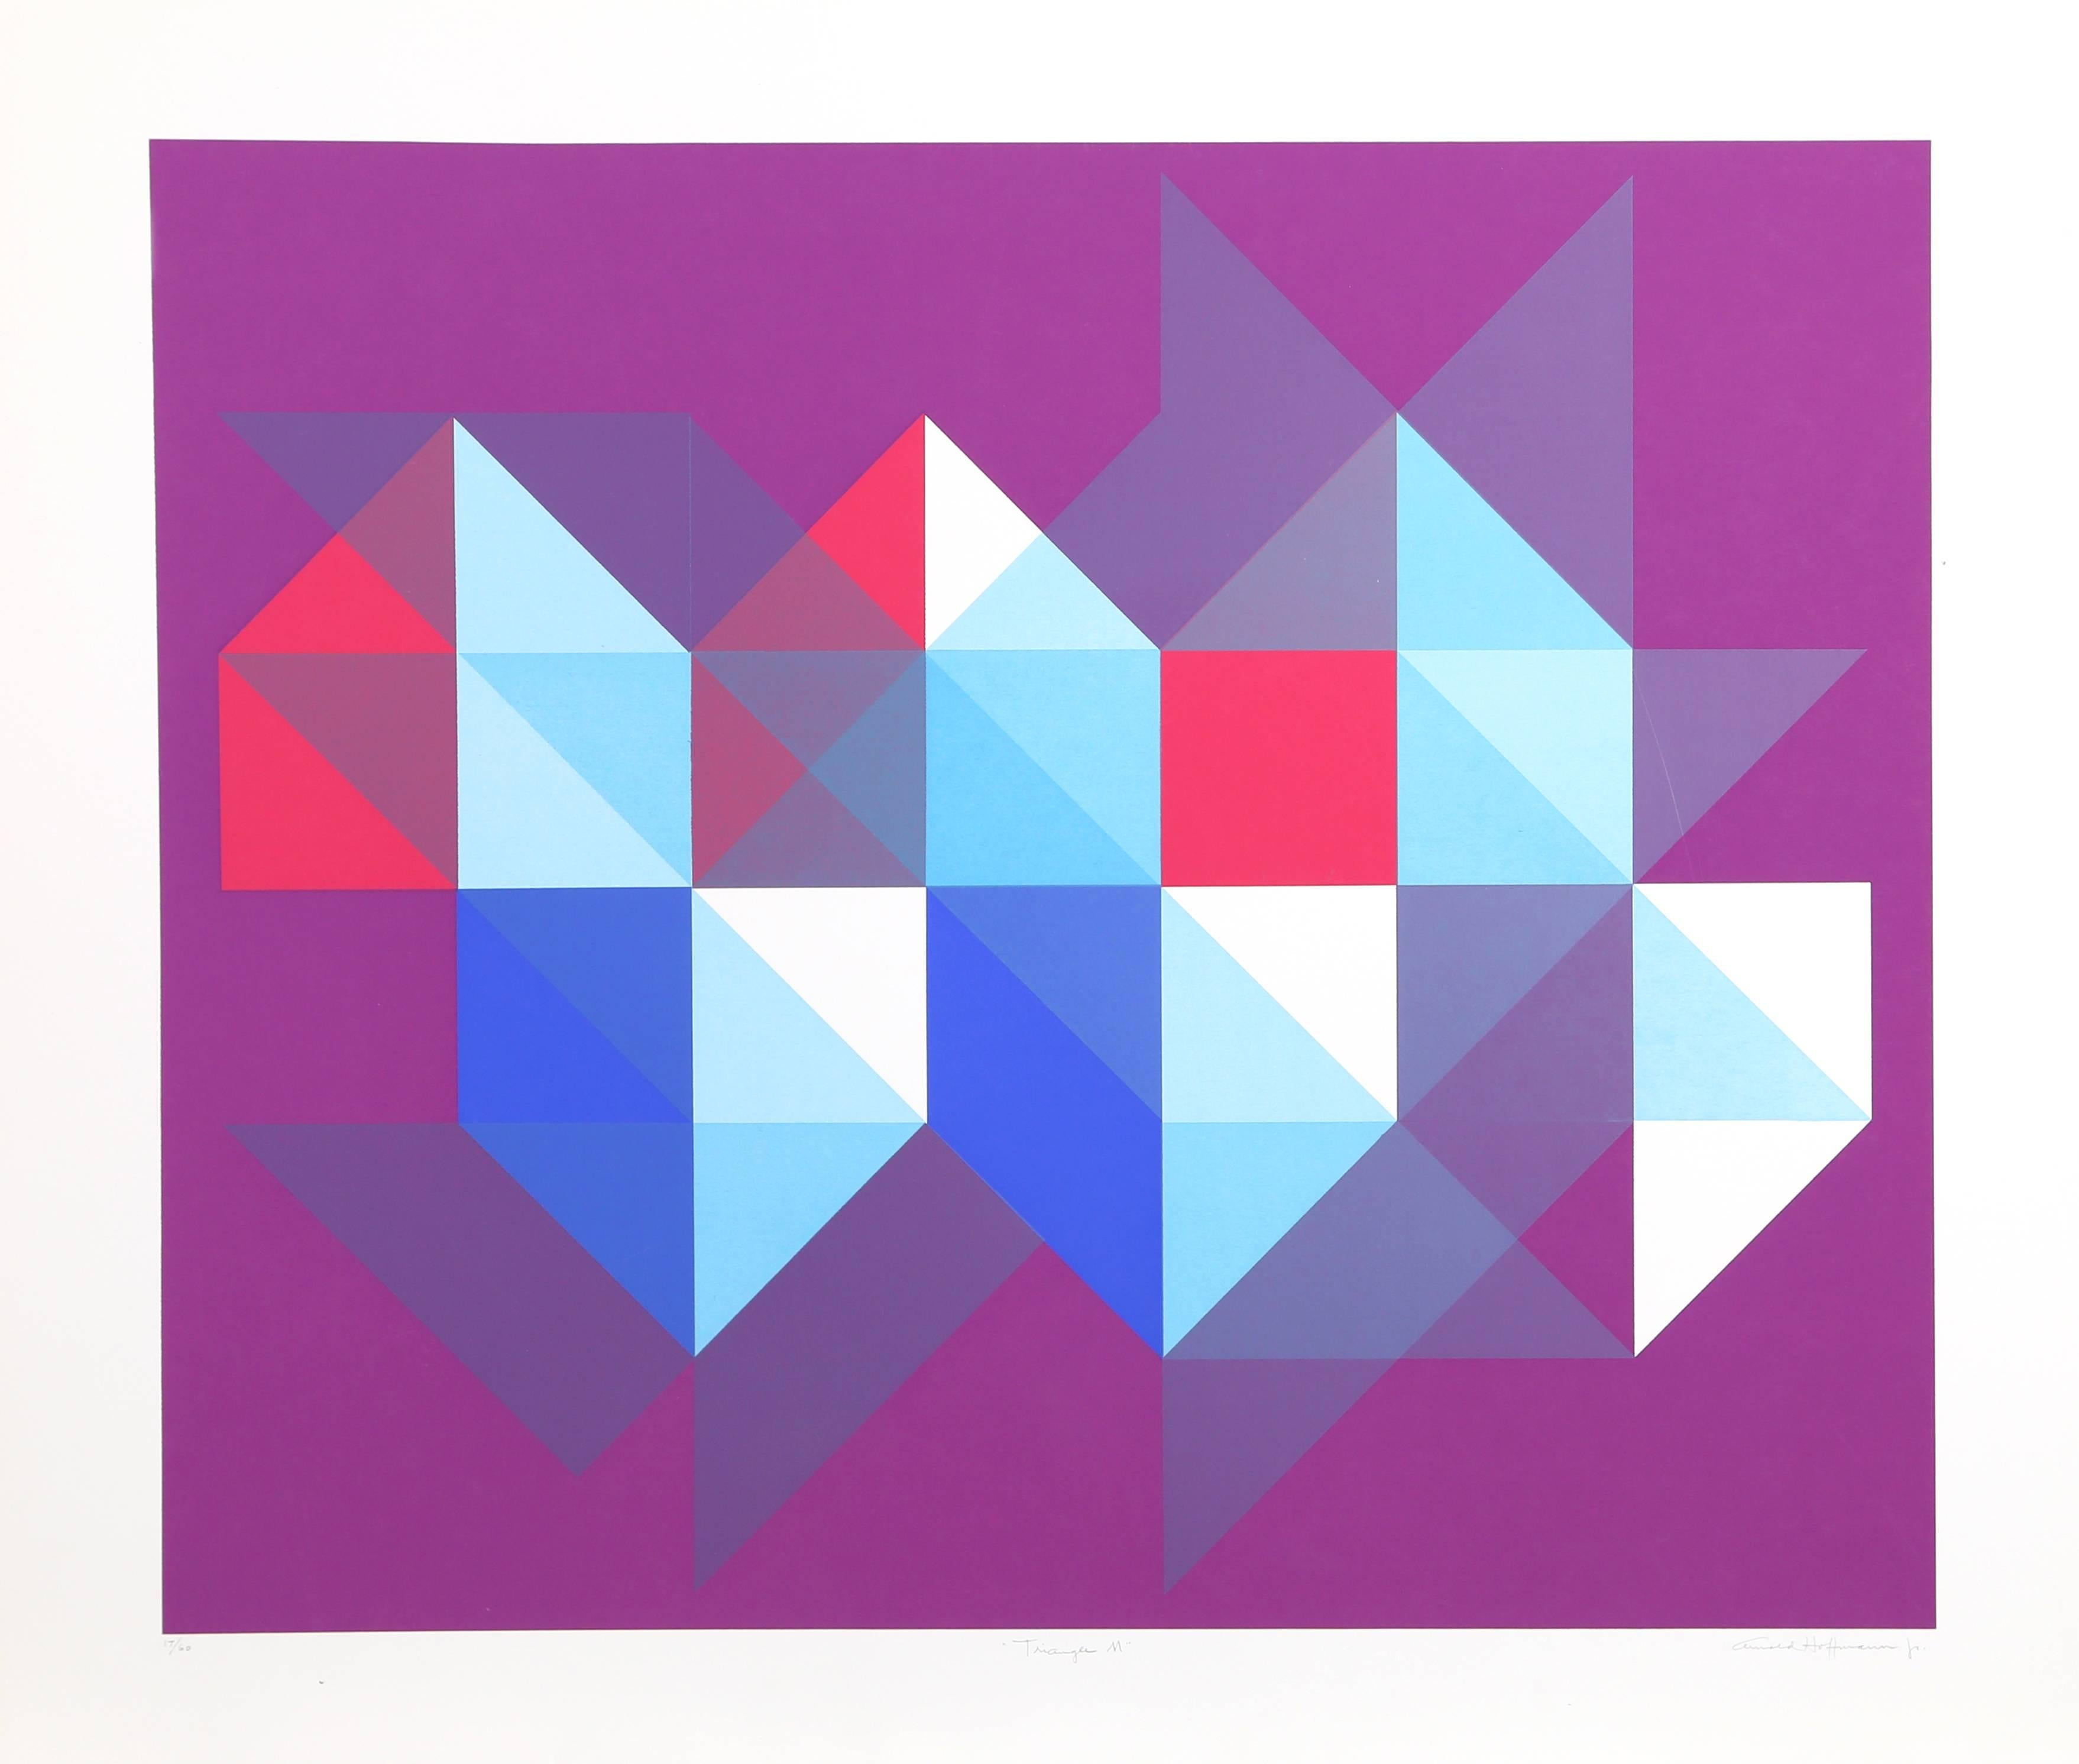 Künstler: Arnold Hoffman, JR., Amerikaner (1915 - 1991)
Titel: Dreieck M
Jahr: ca. 1970
Medium: Siebdruck, signiert und nummeriert mit Bleistift
Auflage: 60
Bildgröße: 25 x 30 Zoll
Größe: 81,28 x 93,98 cm (32 x 37 Zoll)